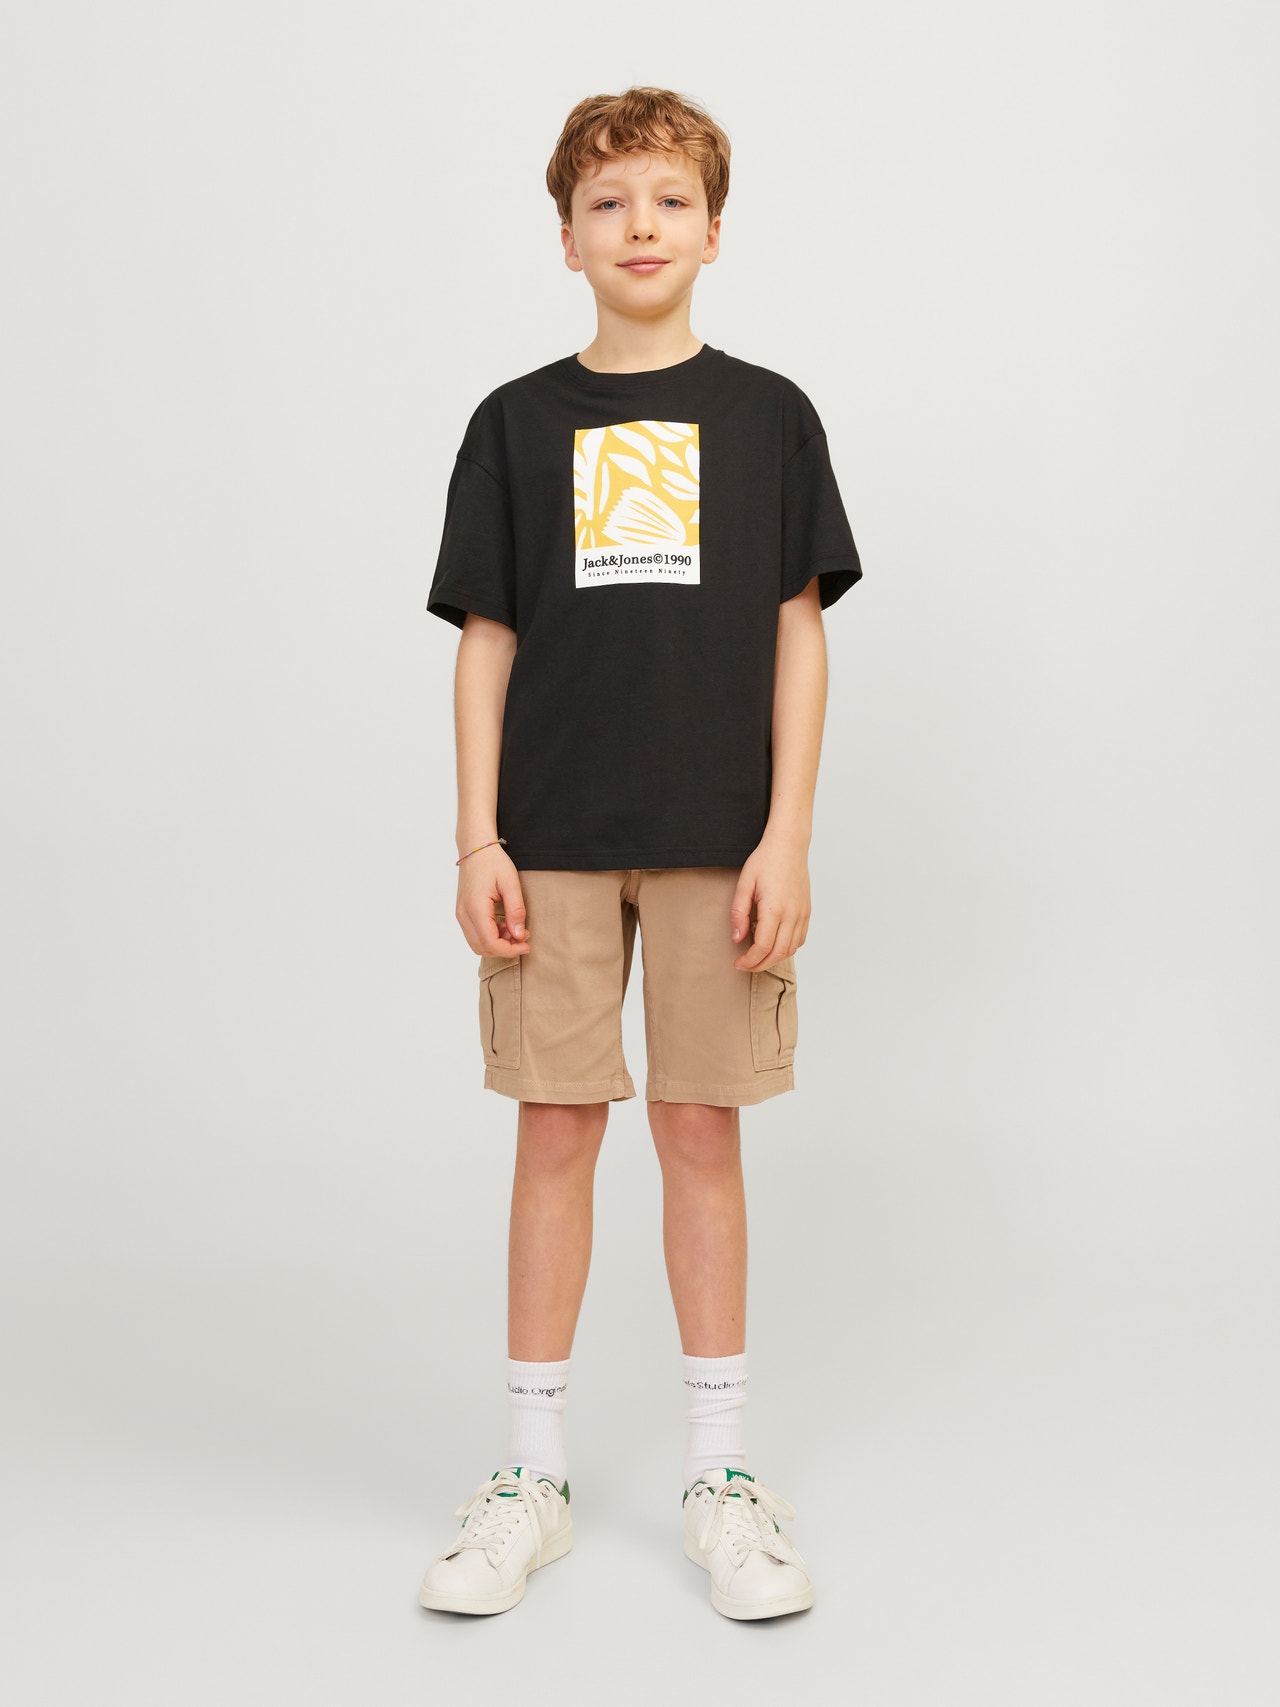 Jack & Jones T-shirt Imprimé Pour les garçons -Black - 12257641